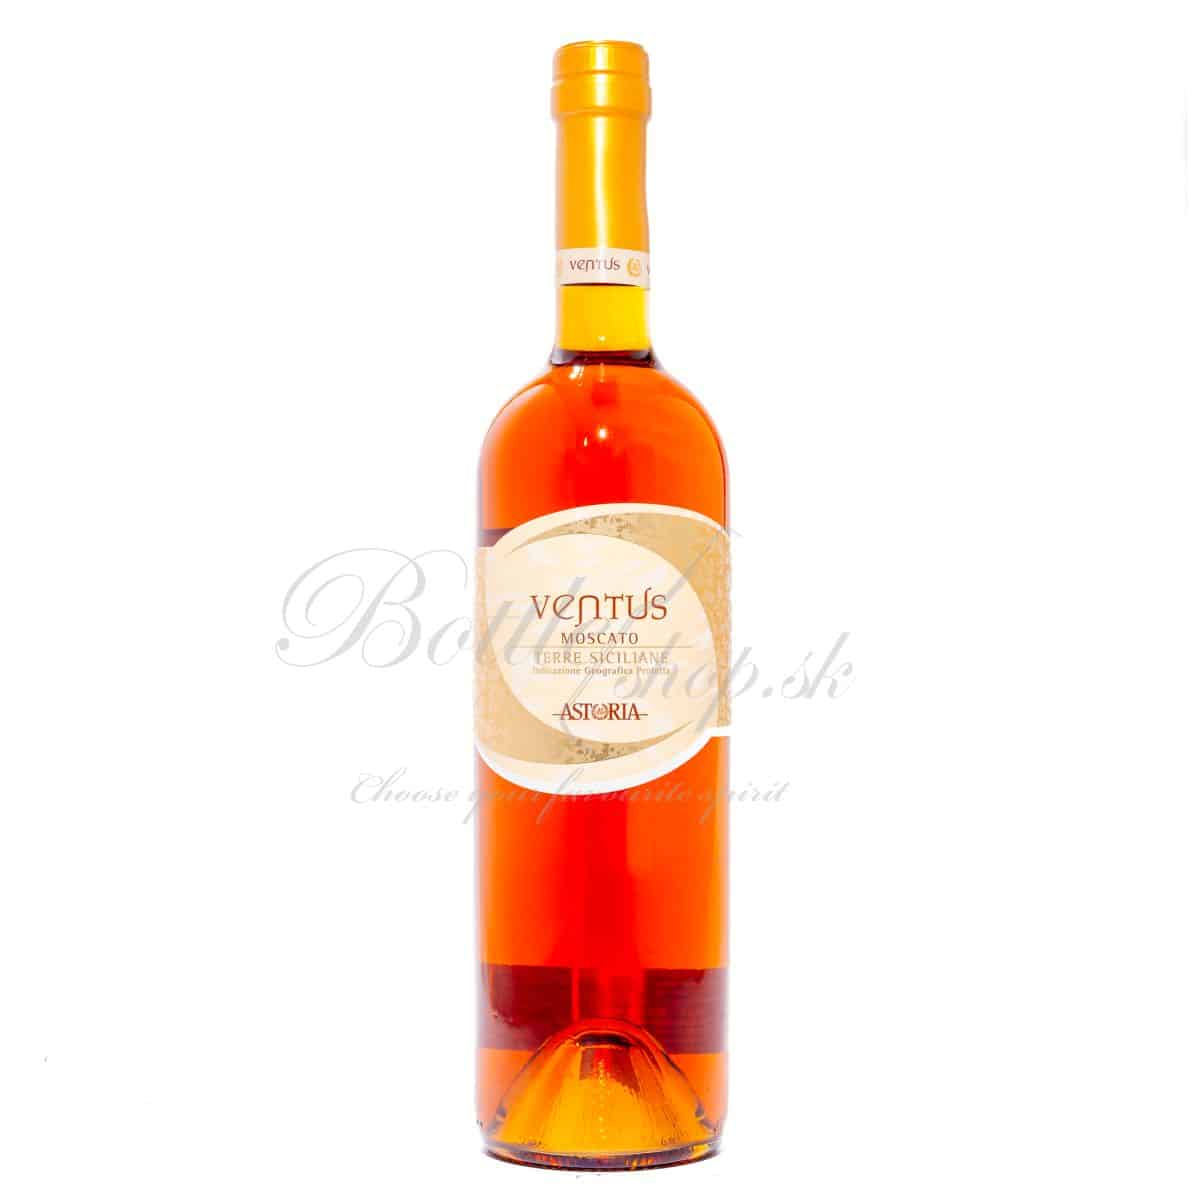 astoria ventus víno moscato 2014 0,75l